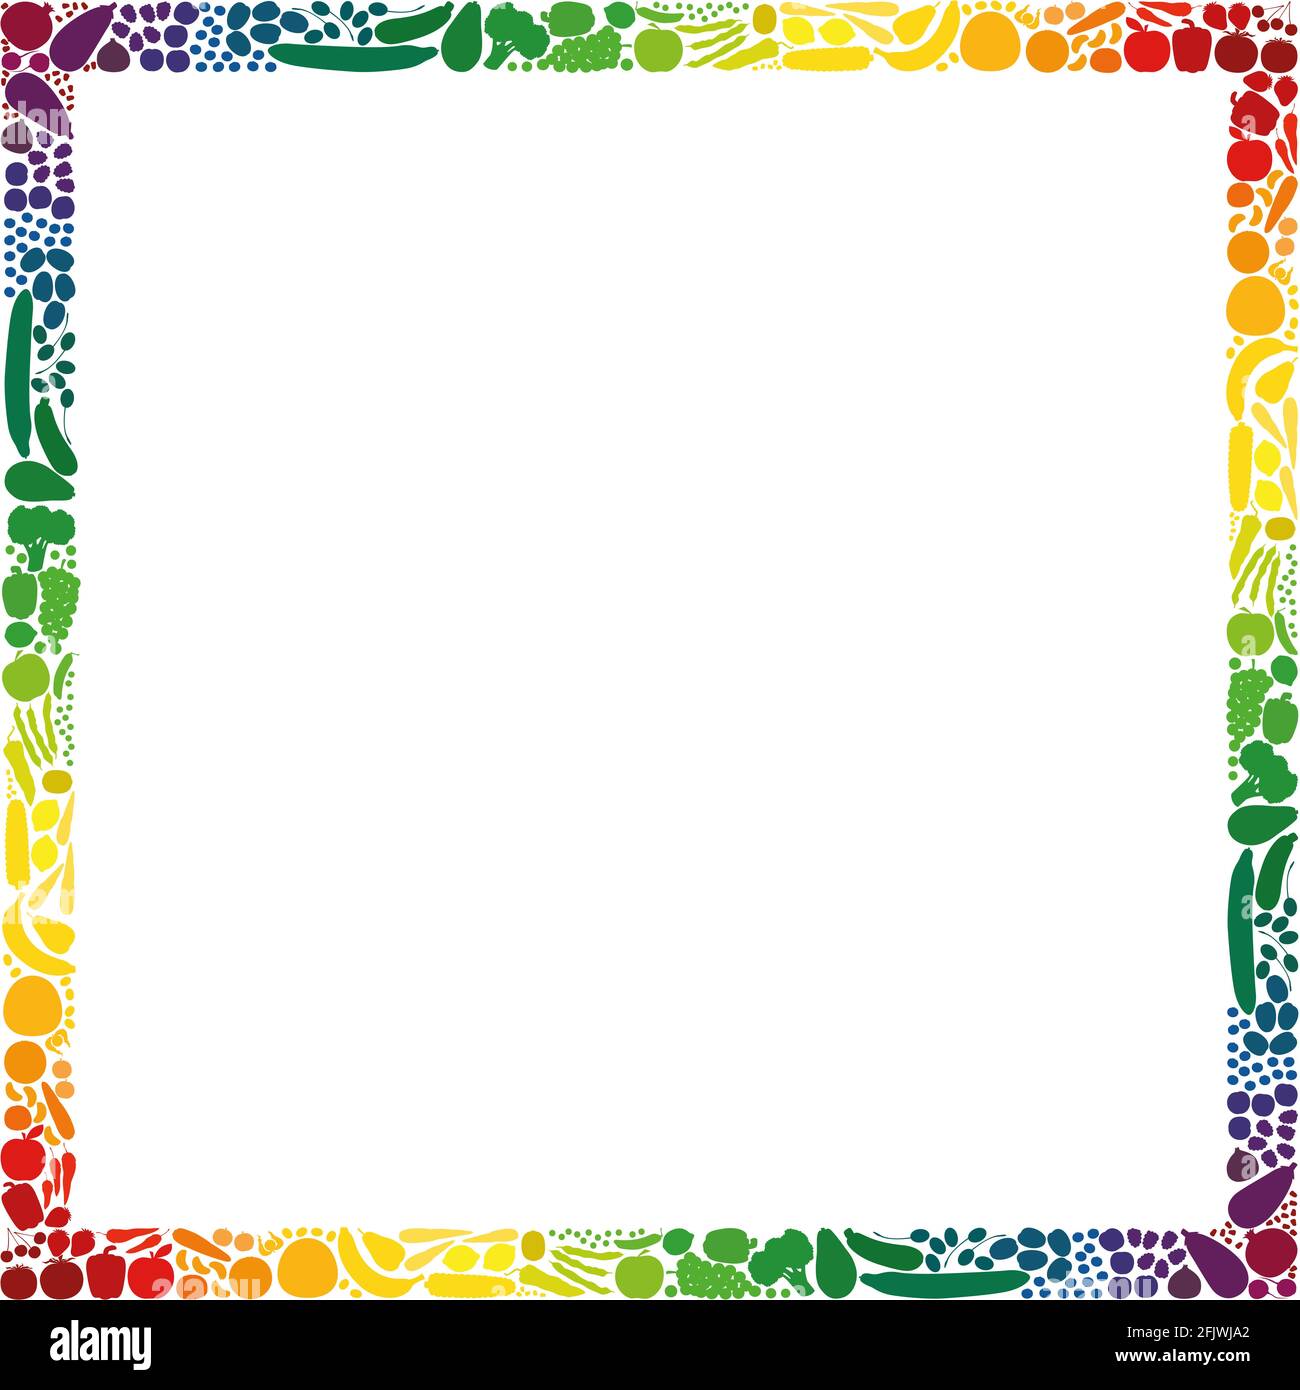 Obst und Gemüse, quadratischer Rahmen, Kollektion mit Regenbogen-Farbverlauf - Abbildung auf weißem Hintergrund. Stockfoto